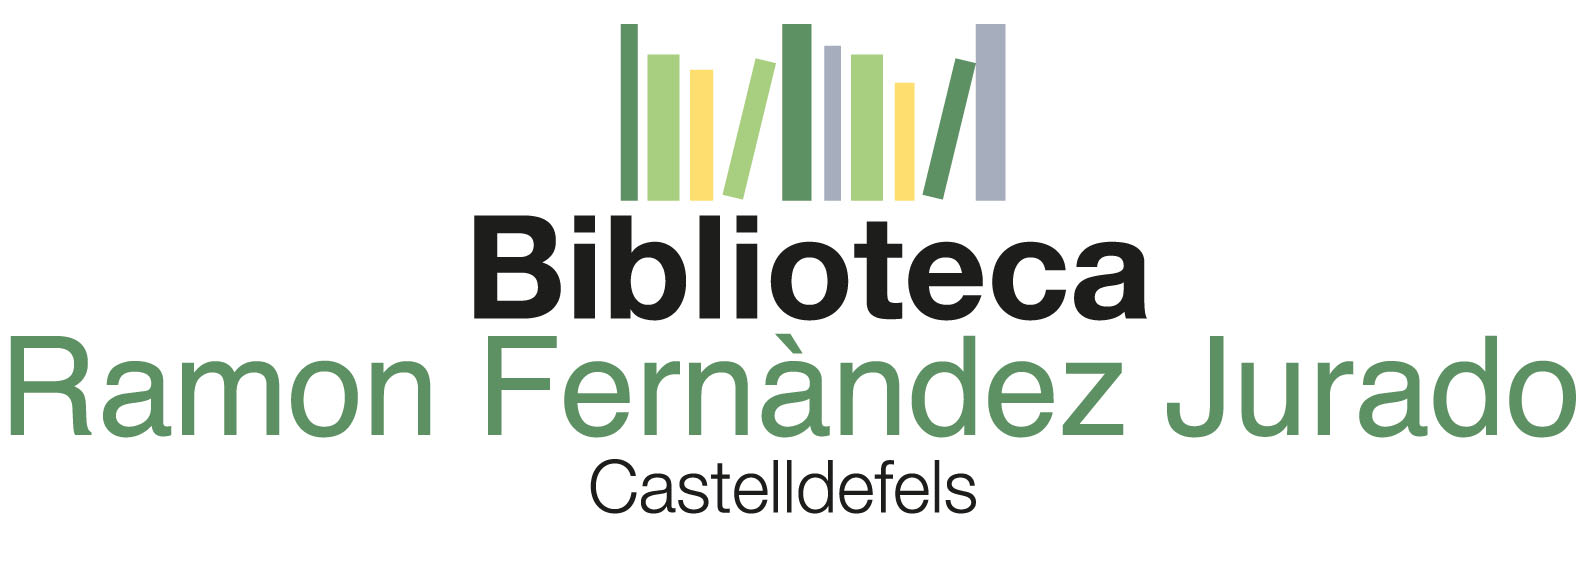 201810293519_logo_biblioteca_Fernandez_Jurado.jpg